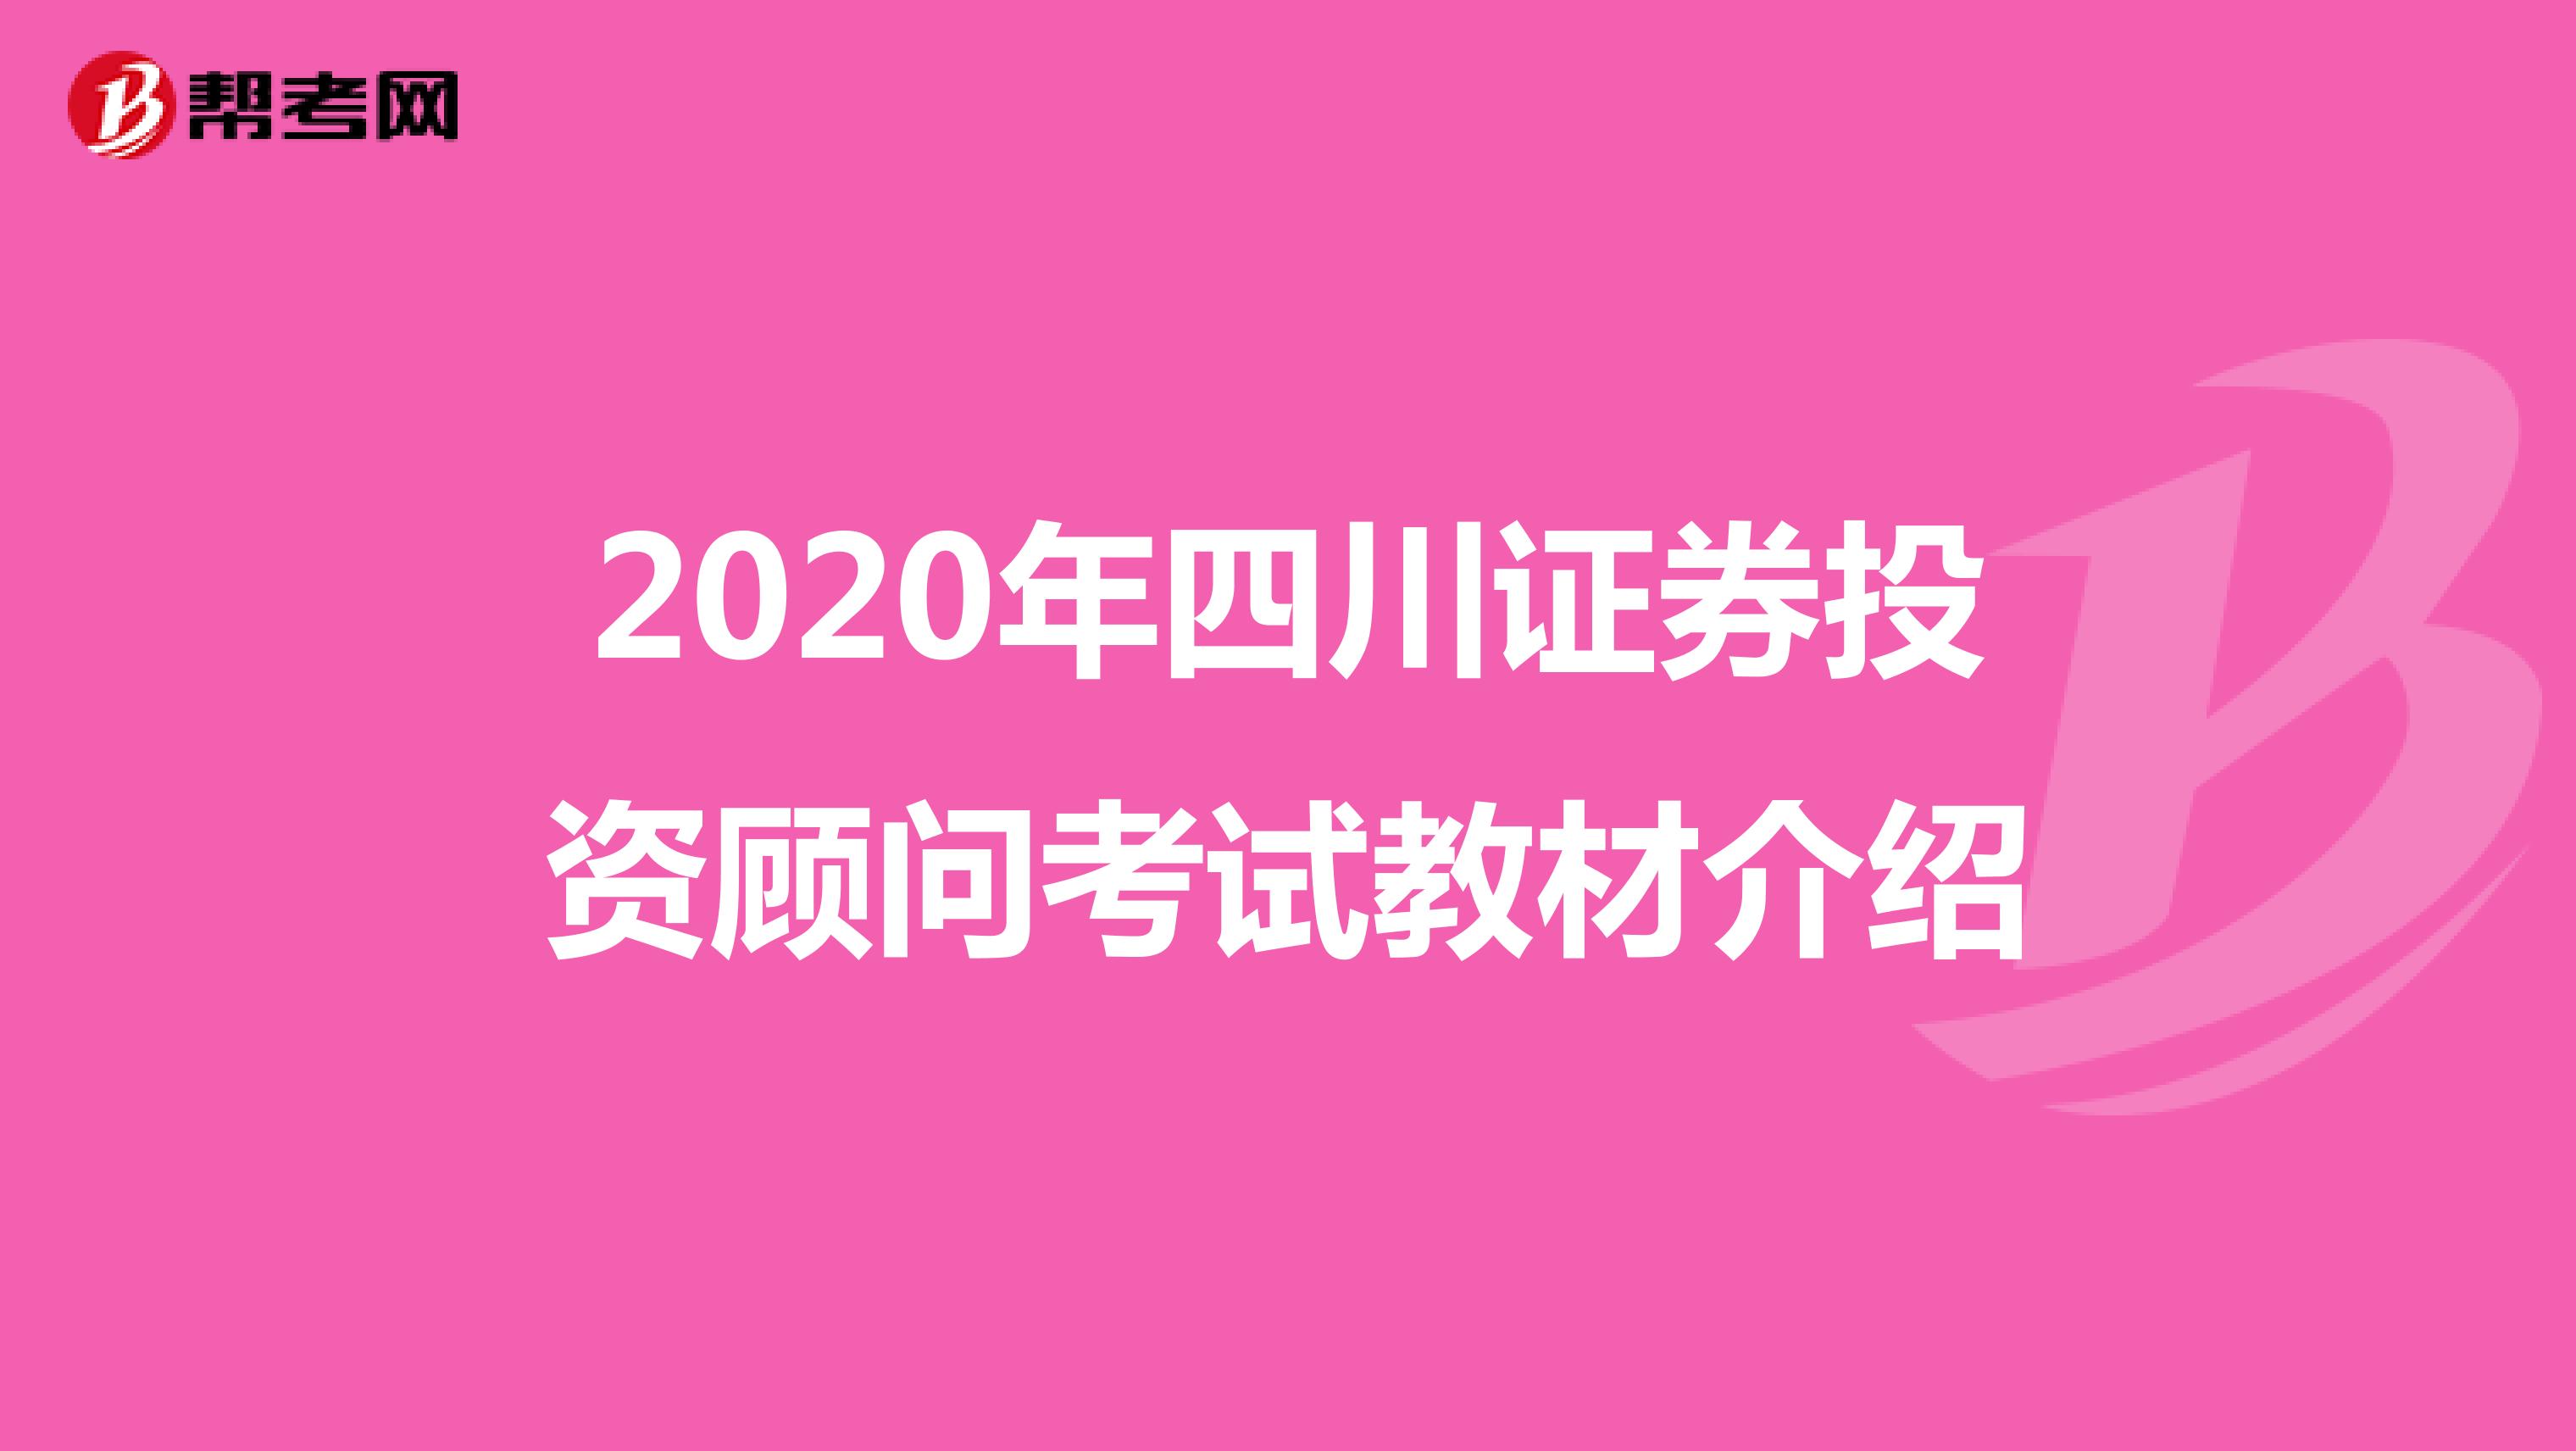 2020年四川证券投资顾问考试教材介绍